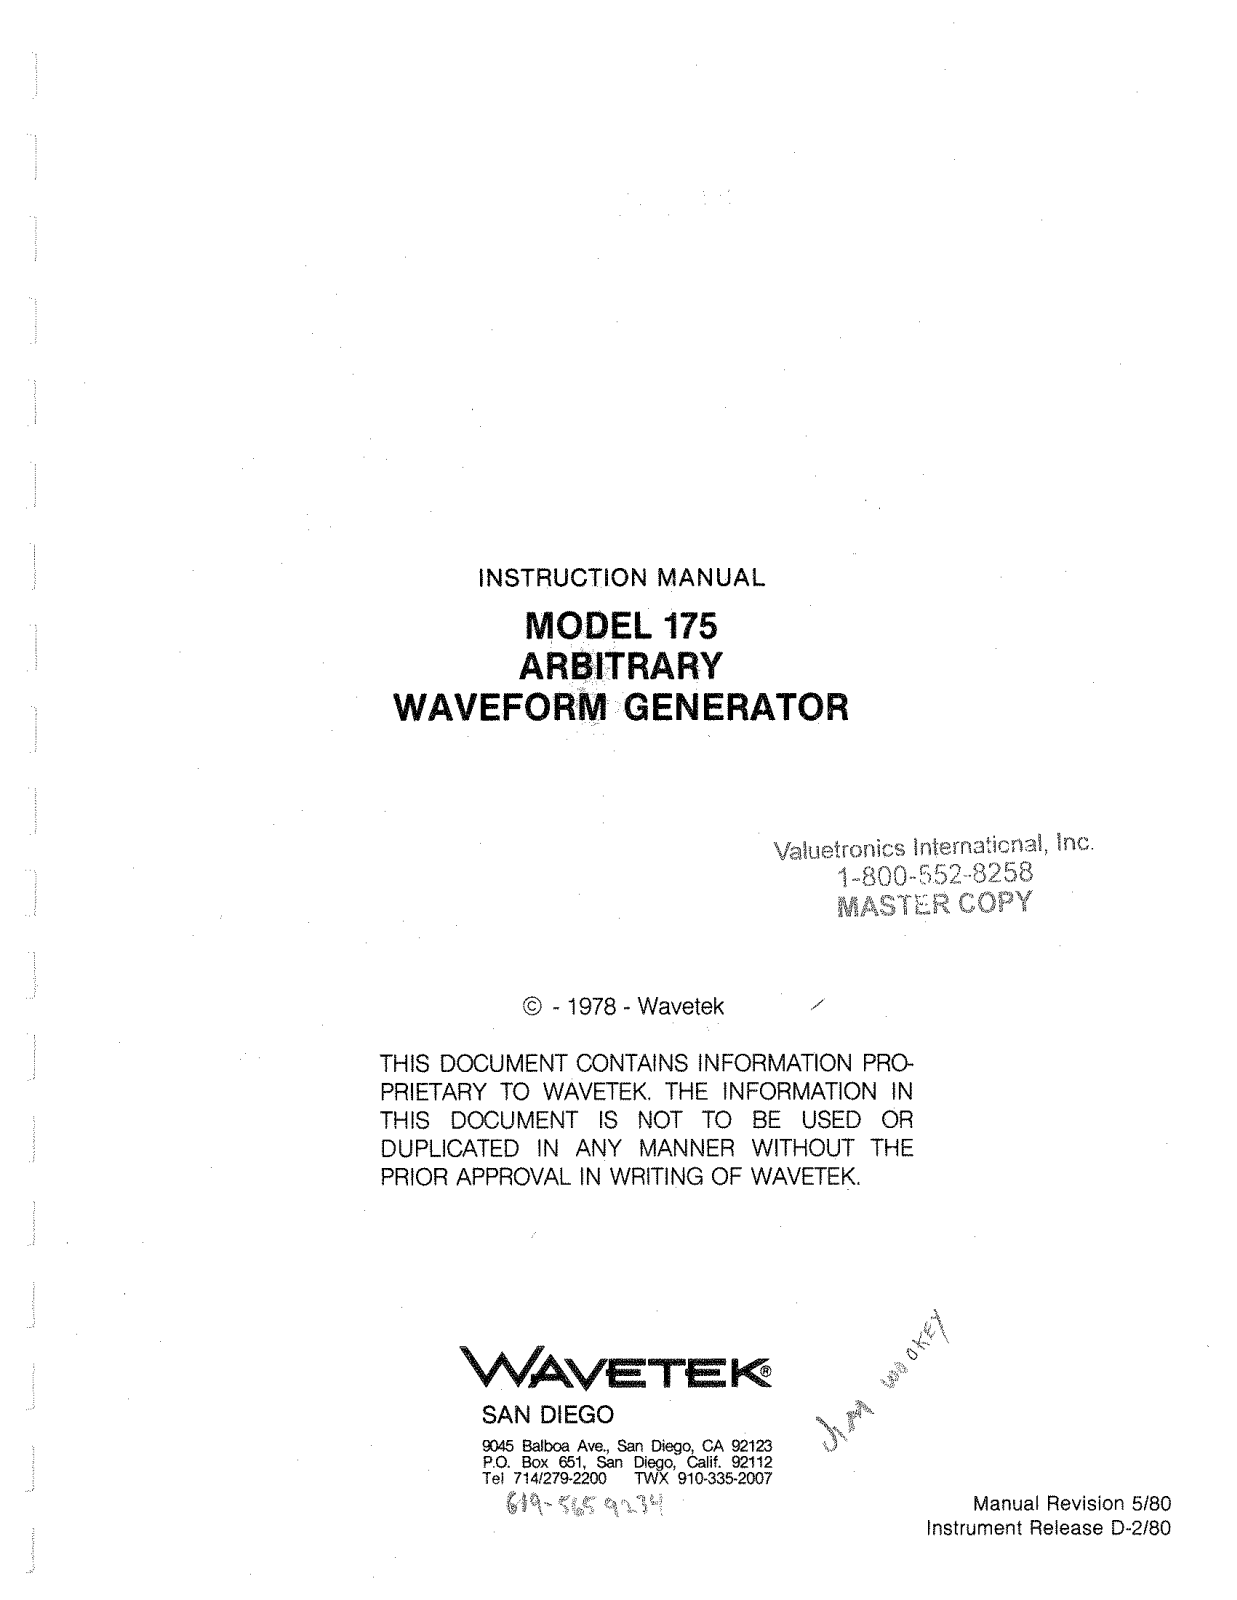 Wavetek 175 User Manual